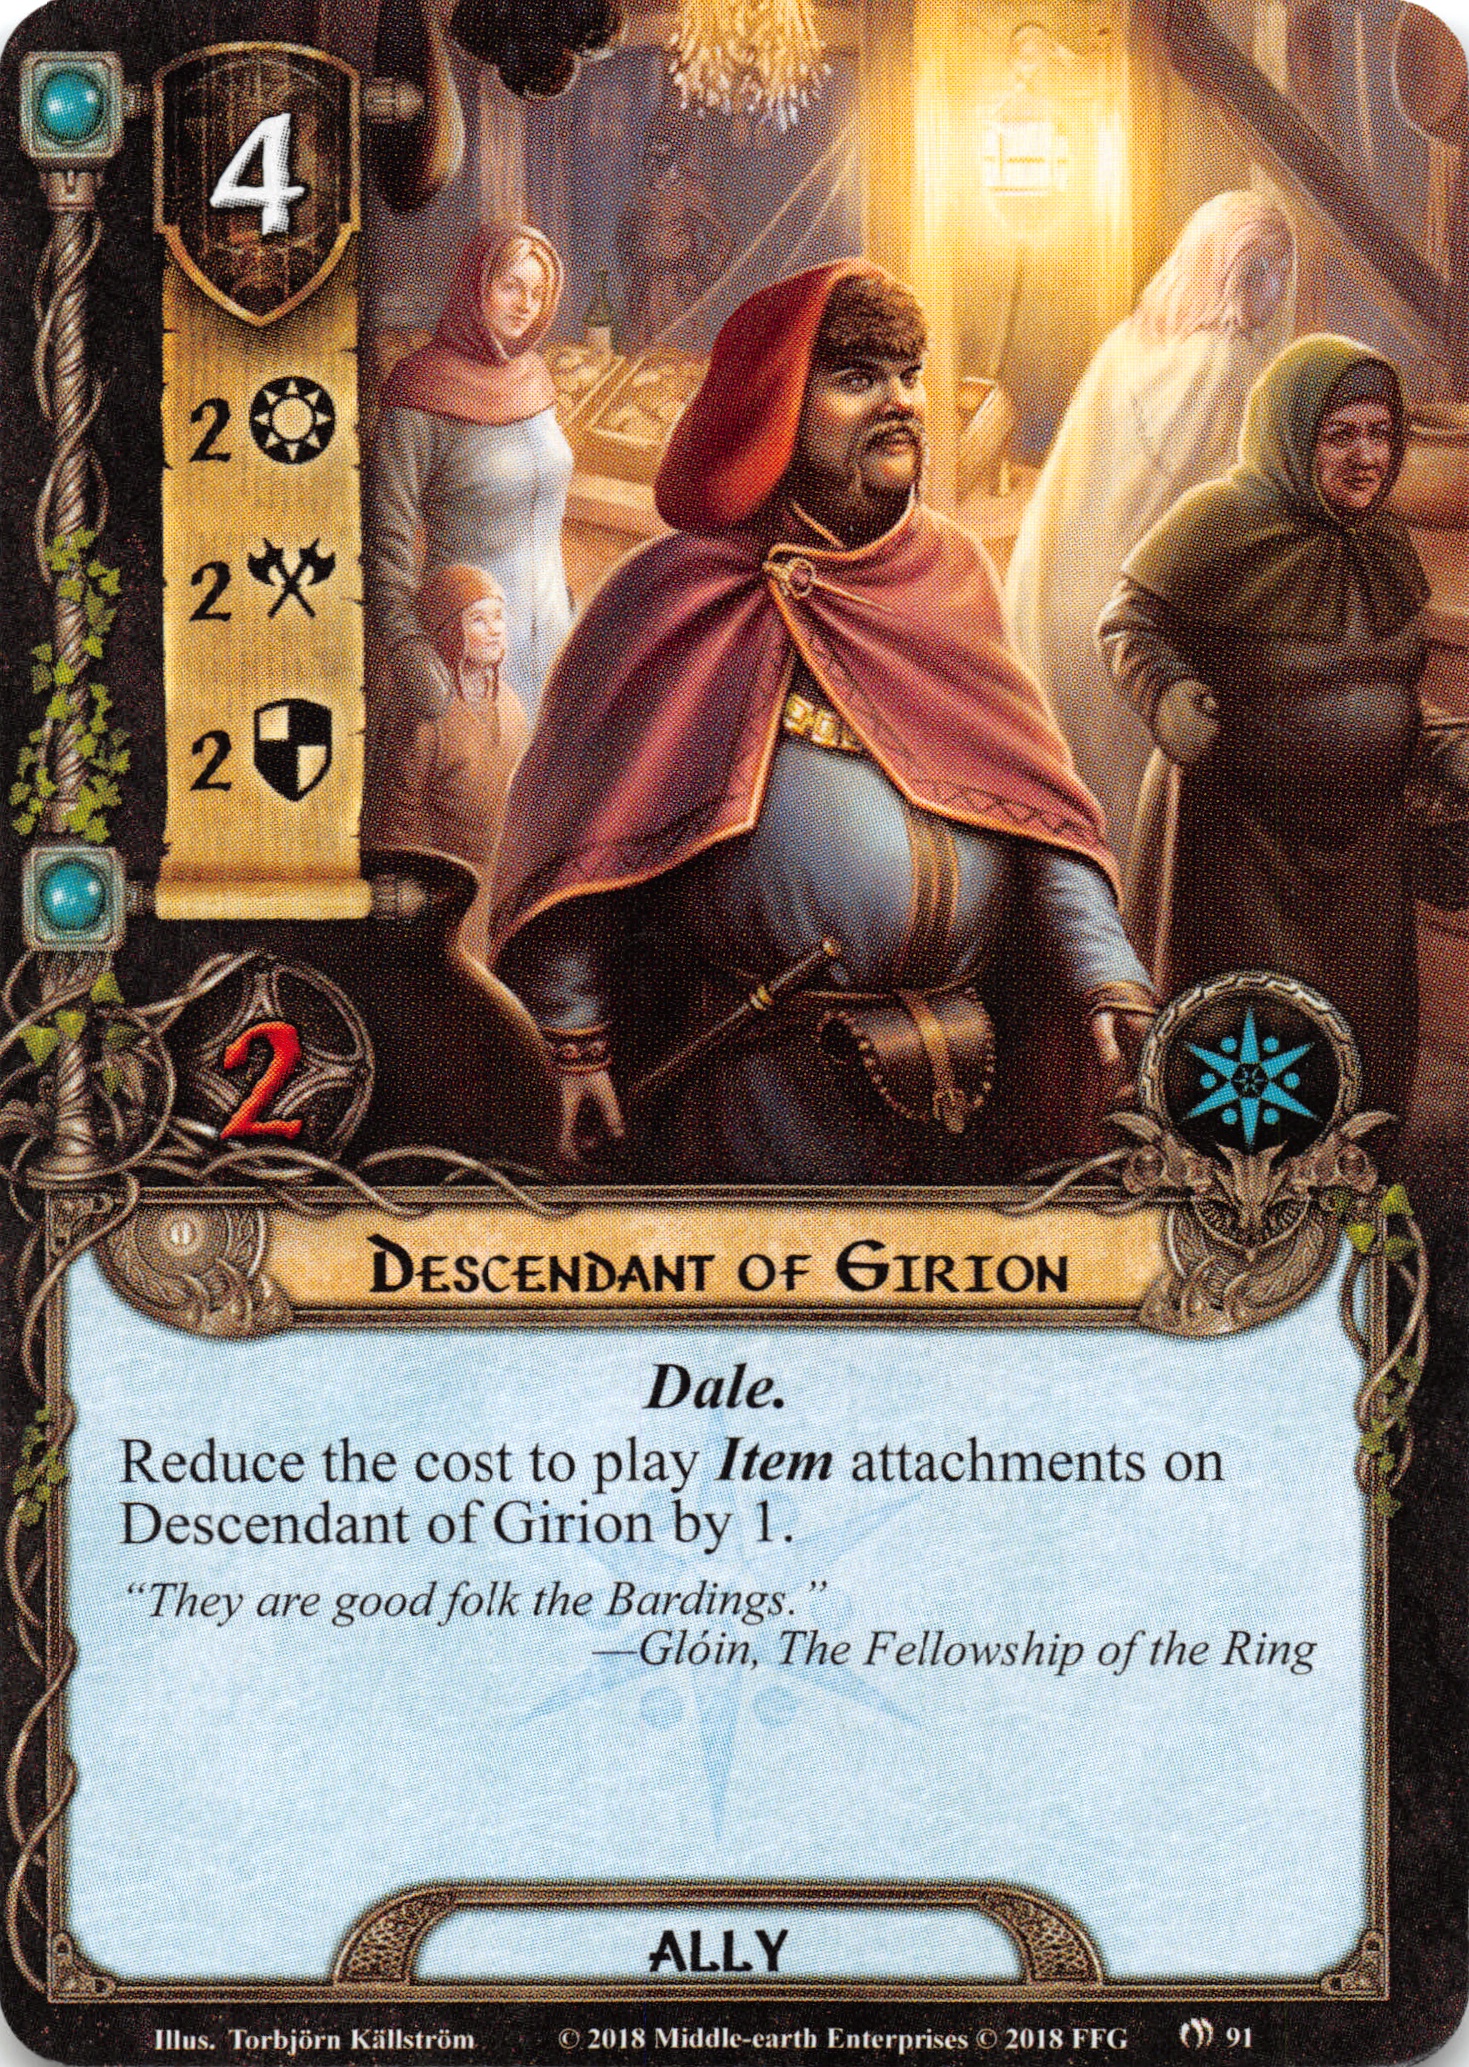 Descendant of Girion